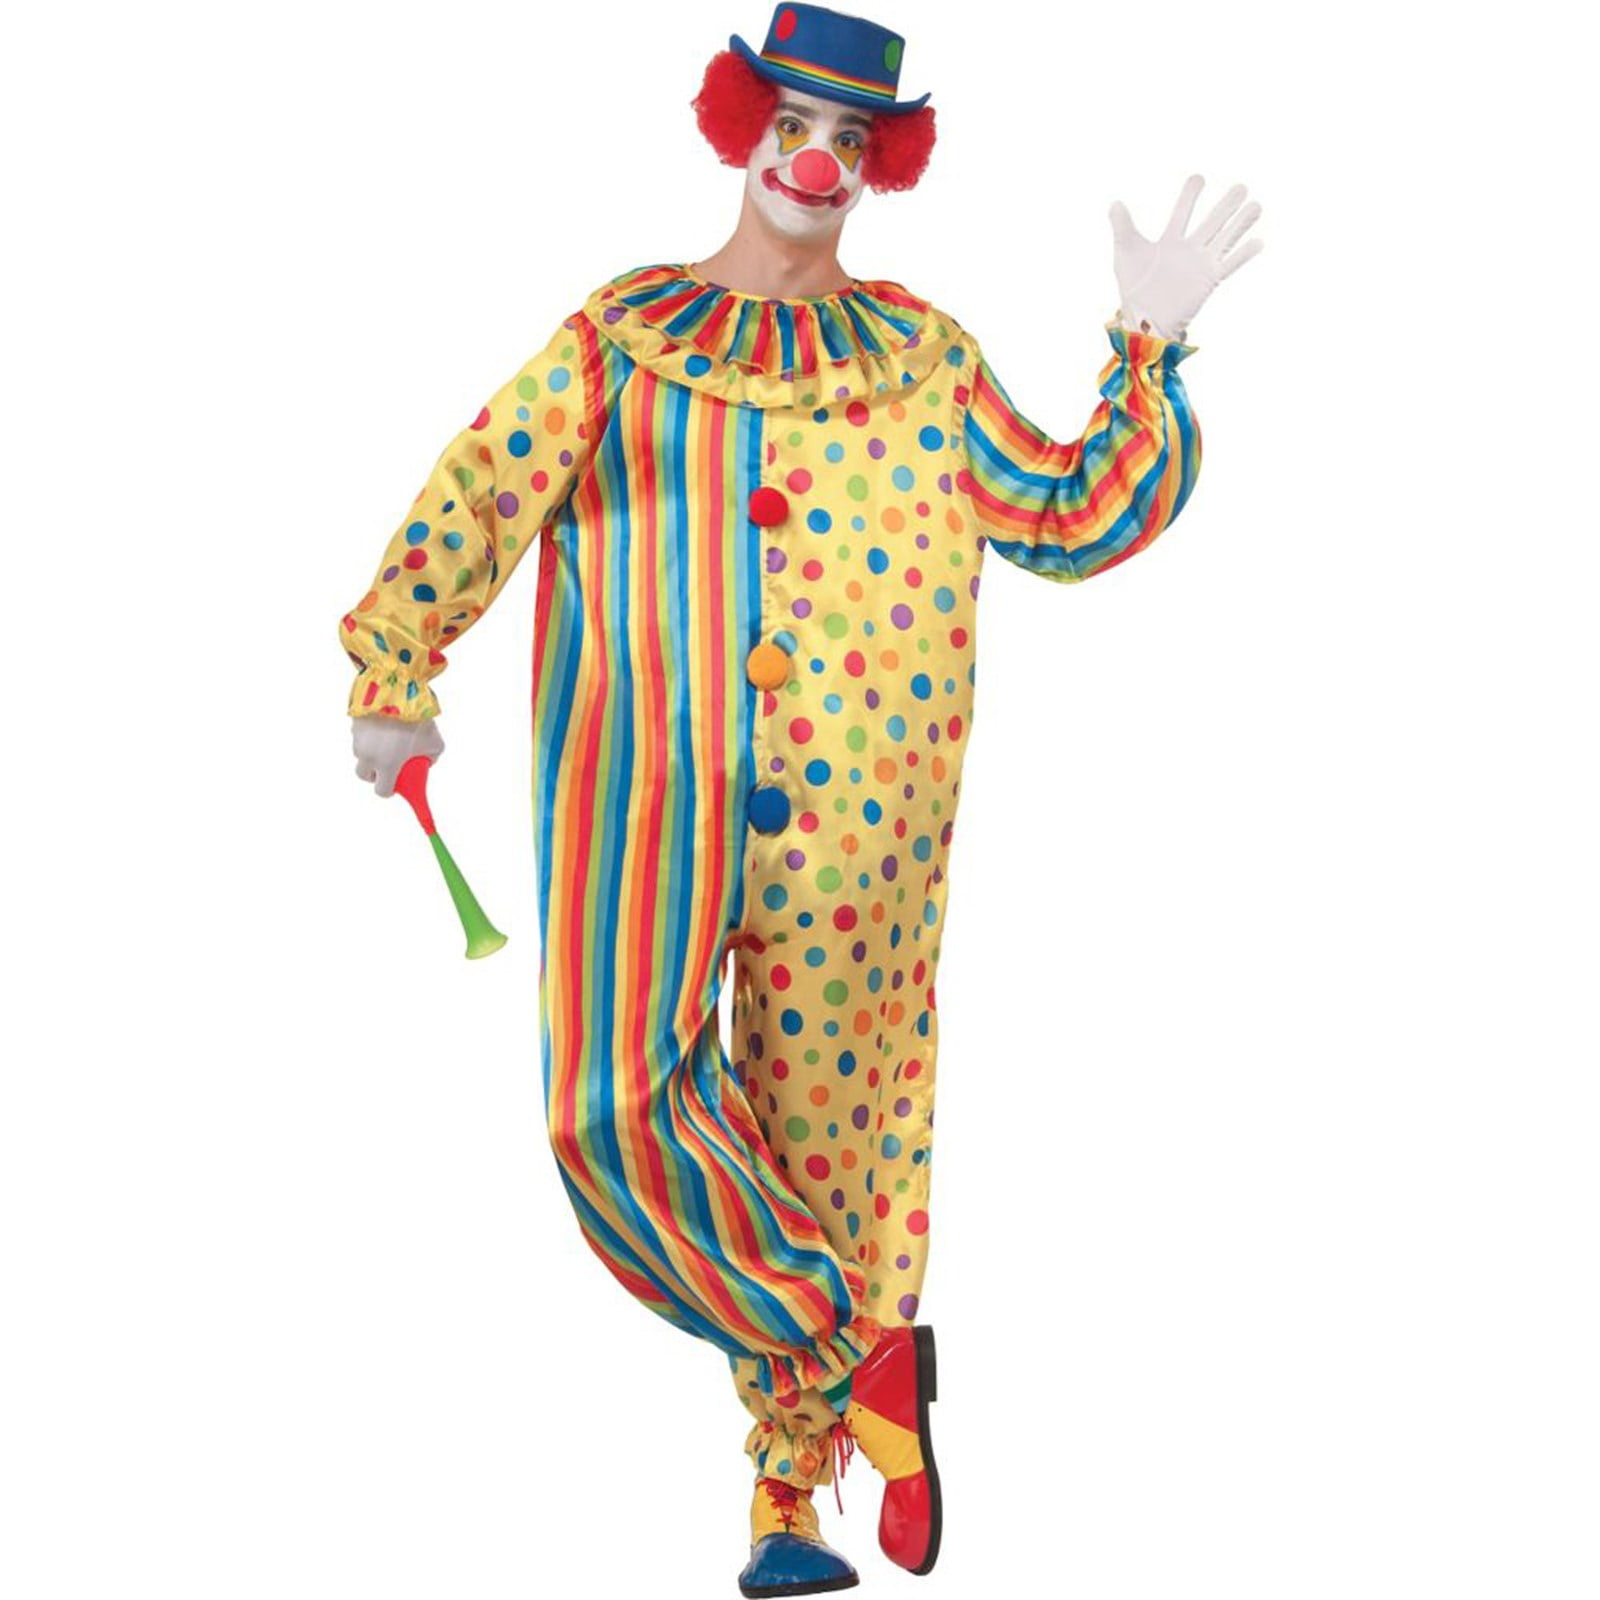 Men's Spots The Clown Costume - Walmart.com